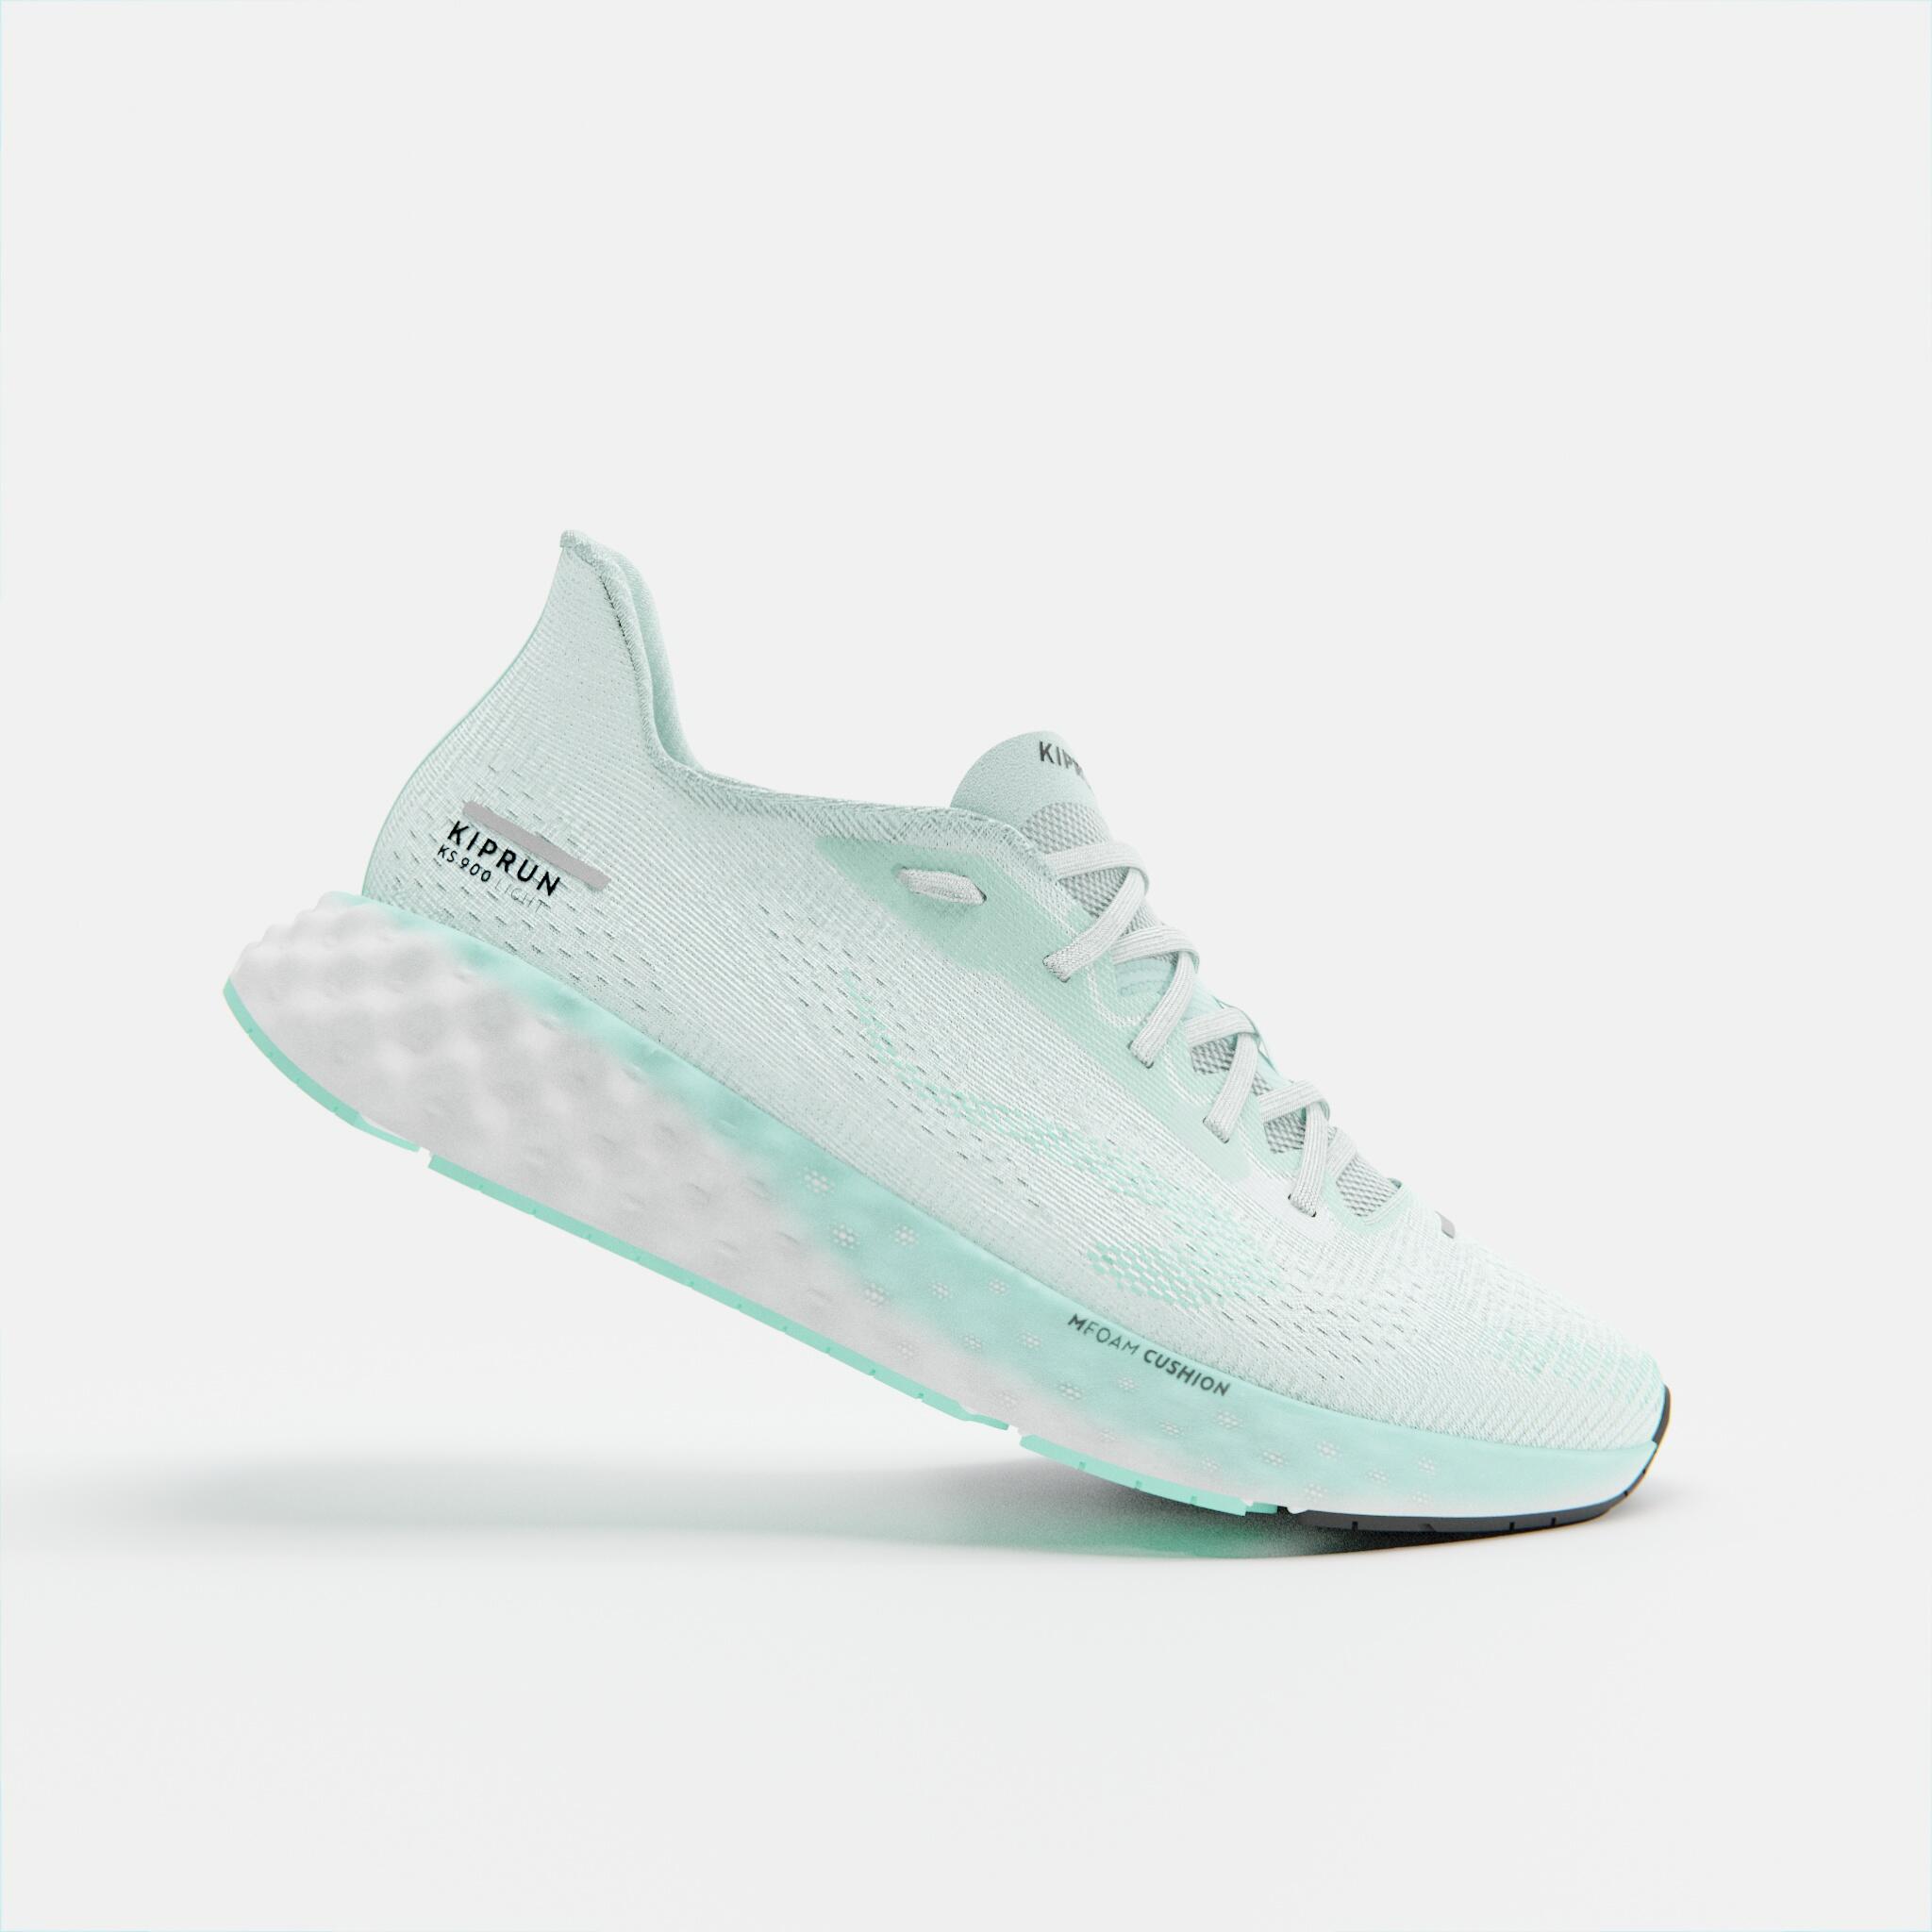 KIPRUN KIPRUN KS900 Light Women's Running Shoes - clear jade